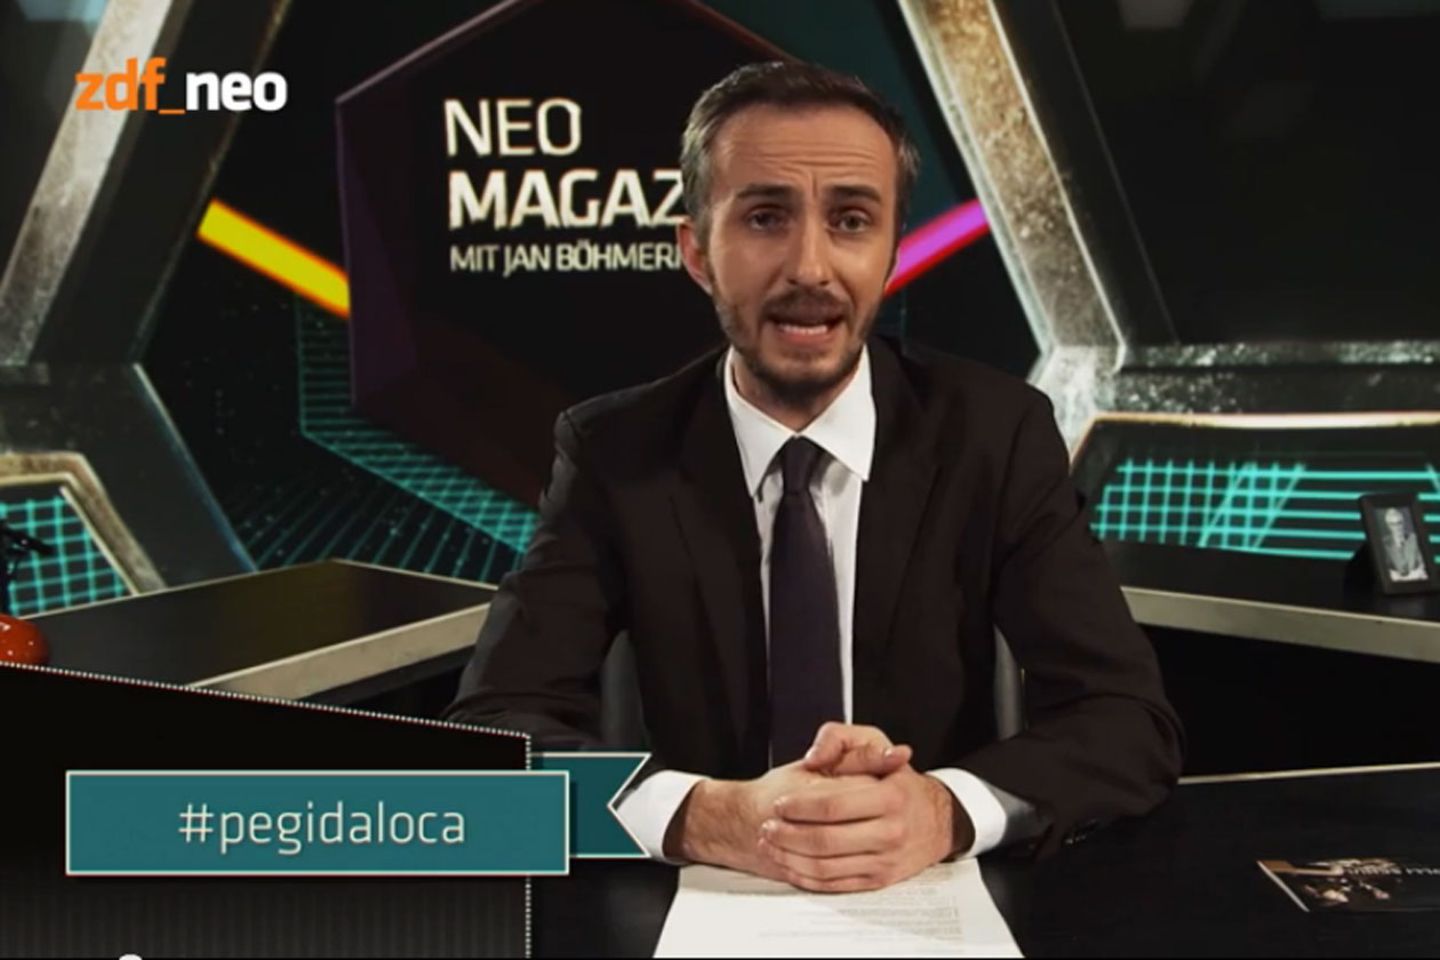 #Pegidaloca war der Hashtag der Woche beim "Neo Magazin"